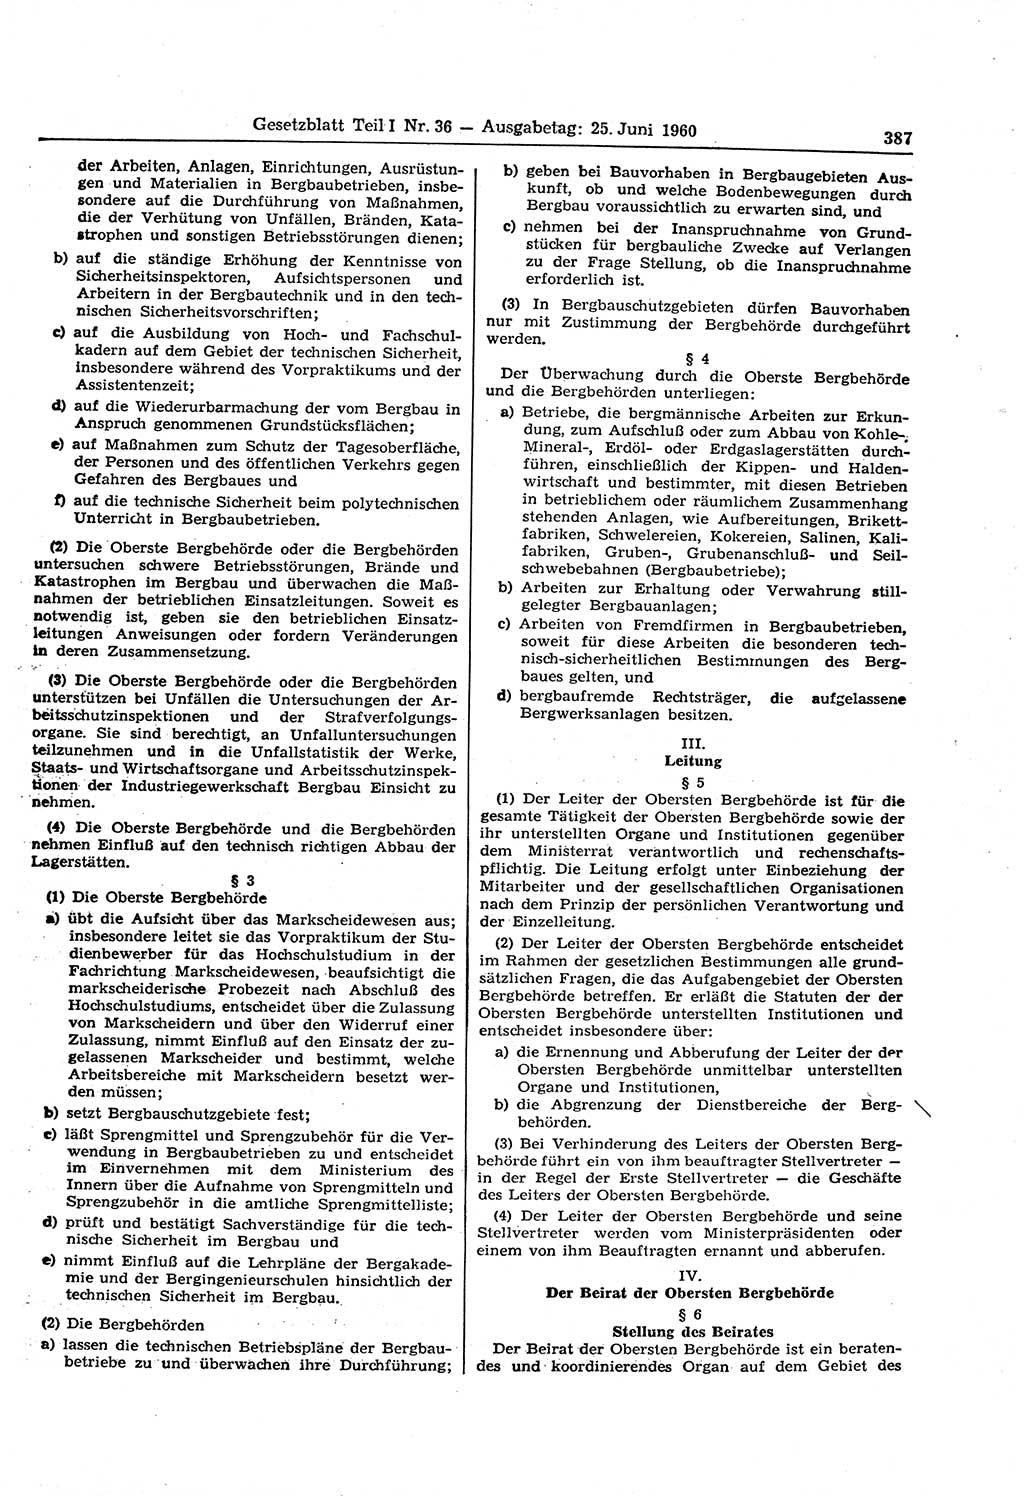 Gesetzblatt (GBl.) der Deutschen Demokratischen Republik (DDR) Teil Ⅰ 1960, Seite 387 (GBl. DDR Ⅰ 1960, S. 387)